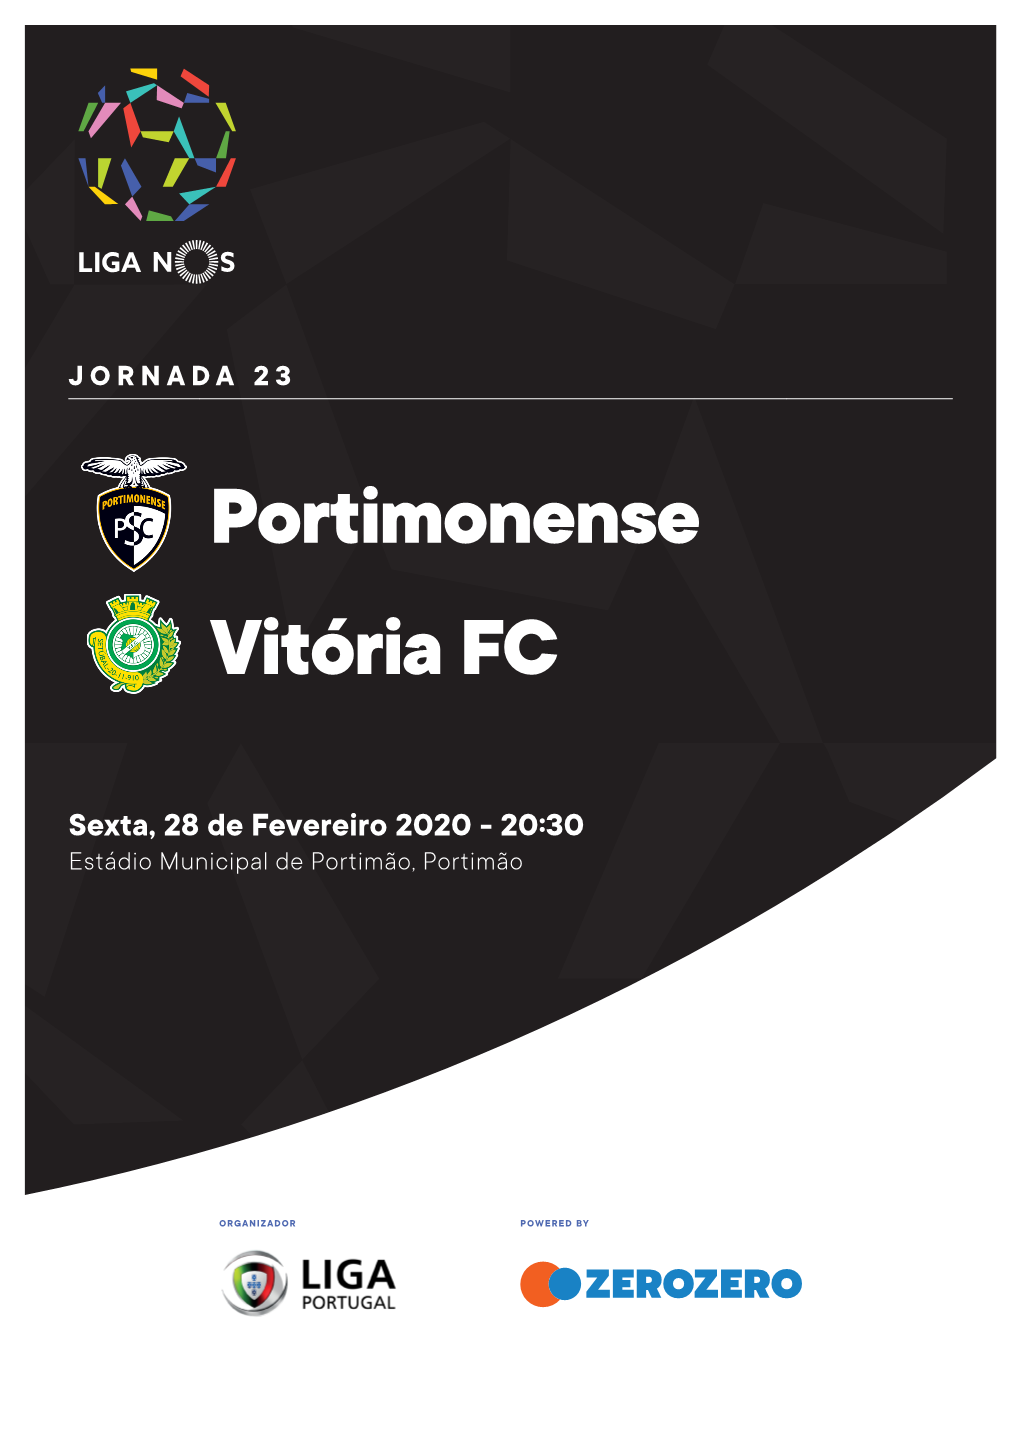 Portimonense Vitória FC